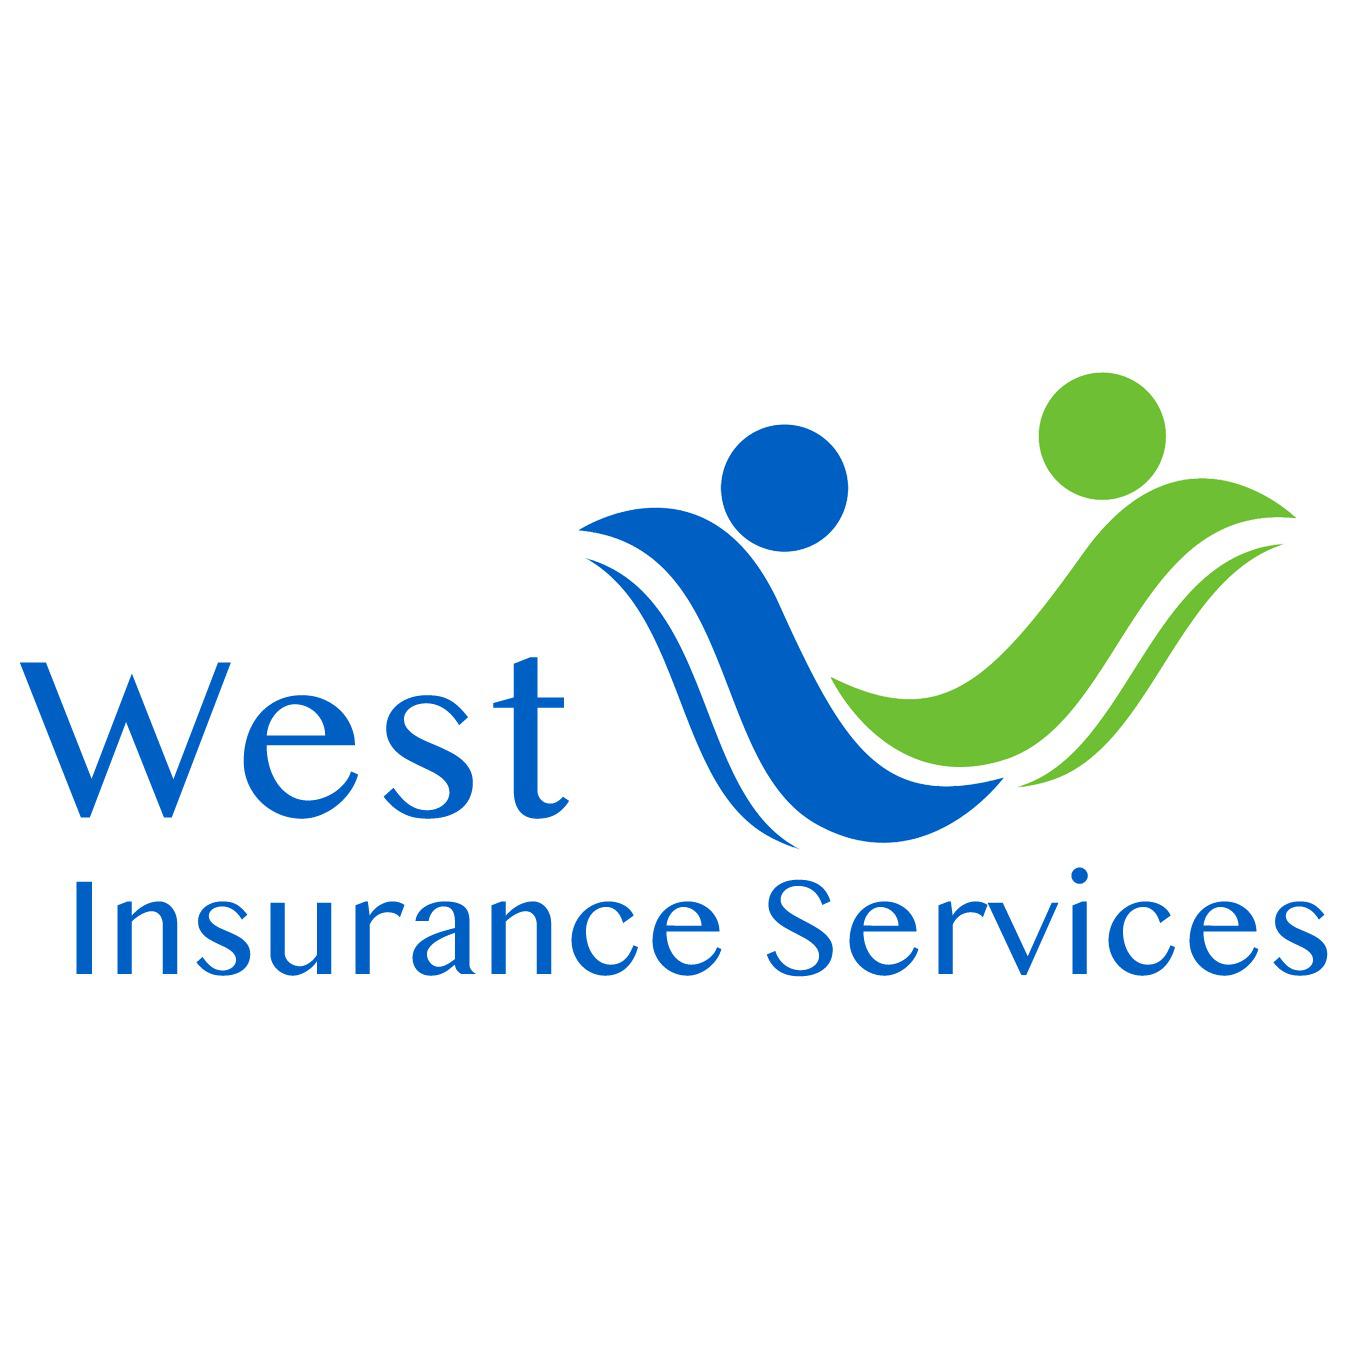 West Insurance Services - Virginia Beach, VA - (757)434-6087 | ShowMeLocal.com